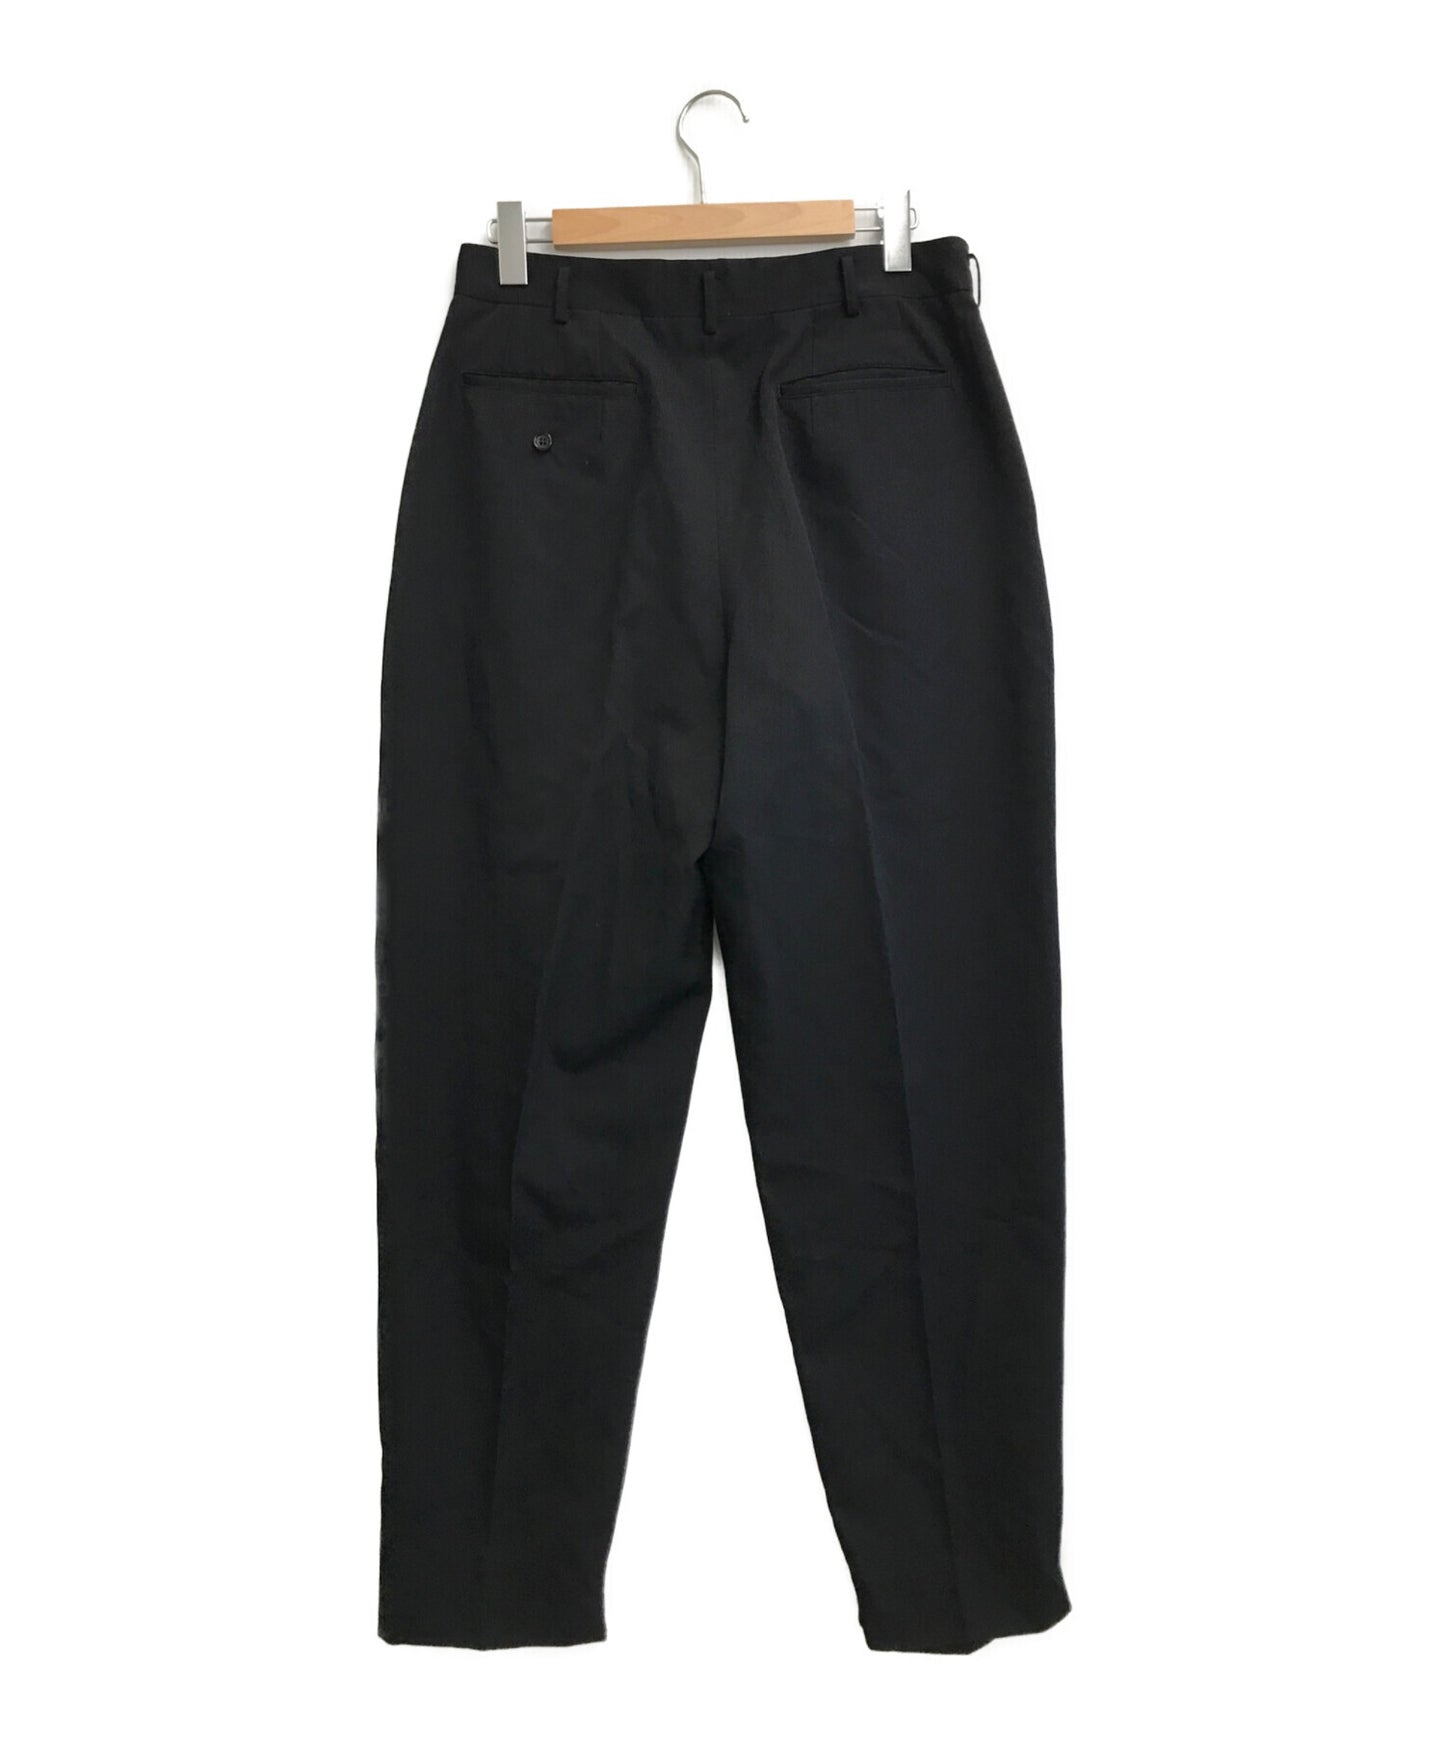 Comme des Garcons Homme Plus Vintage Slack褲子和鬆弛的褲子PP-11002L